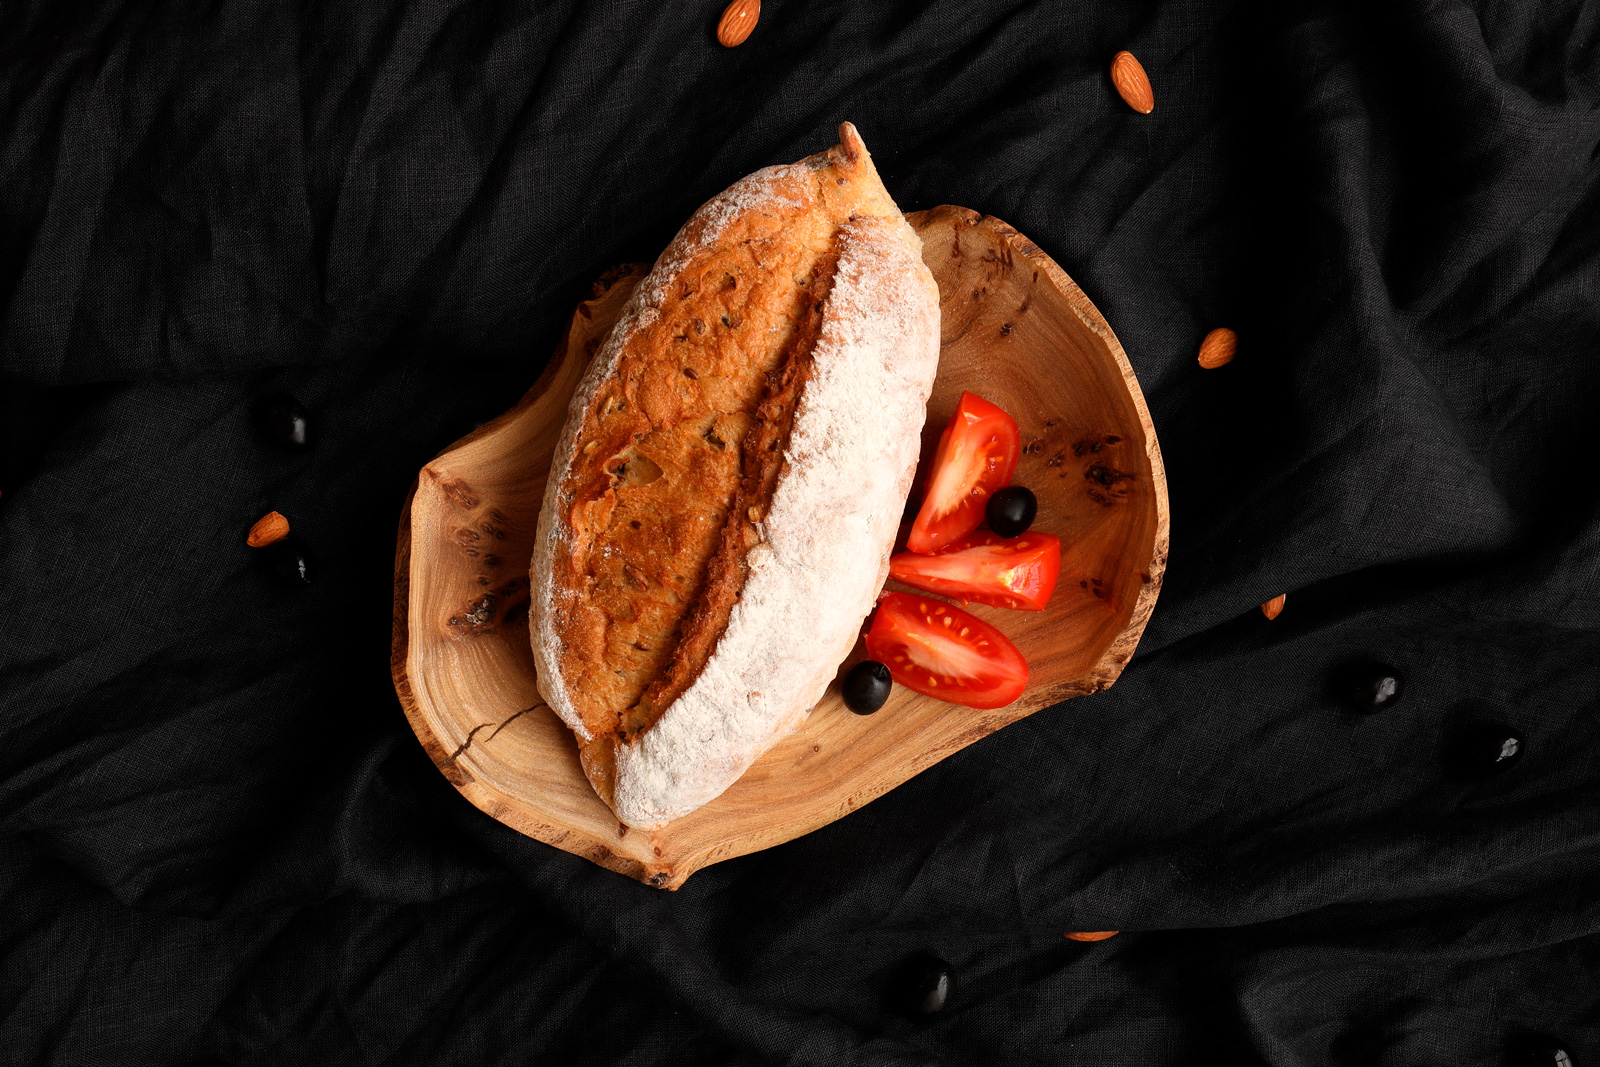 Reconcept фотоссесия food photo красивый хлеб на деревянной тарелке 